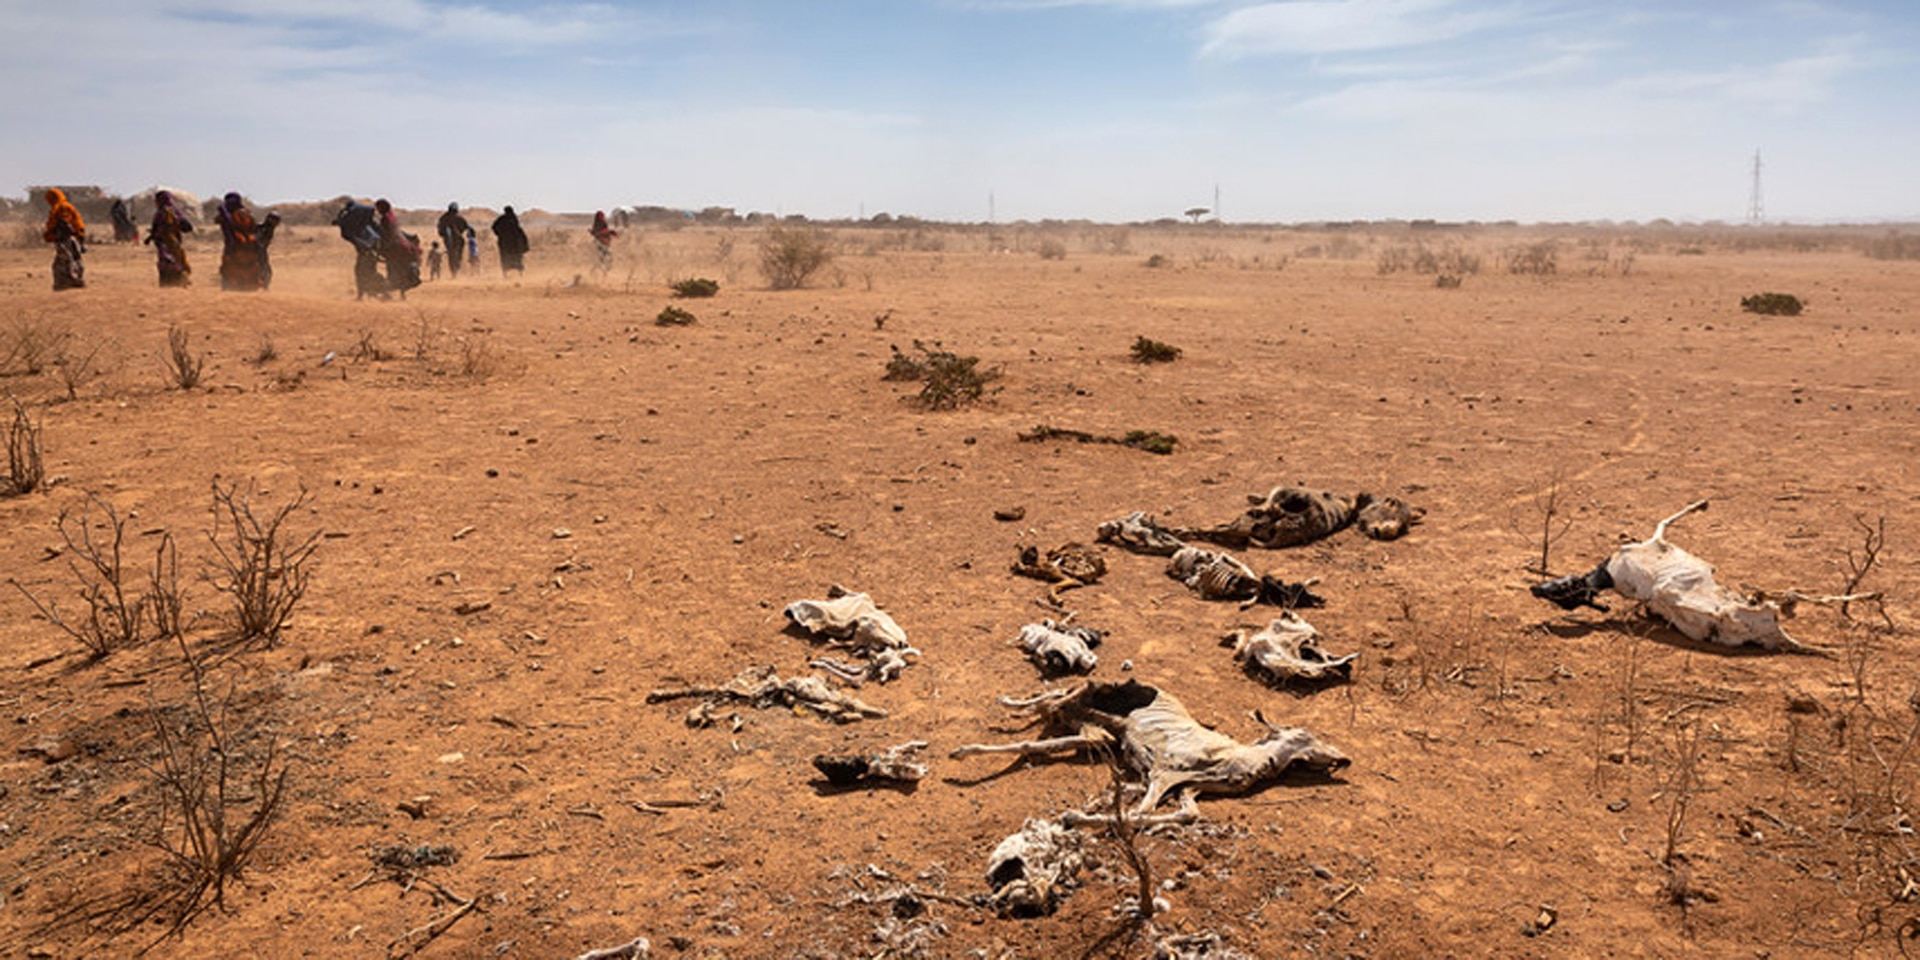 Donne e bambini camminano davanti a carcasse di animali presso il villaggio di Sagalo, nella zona di Korahe, nella regione somala dell'Etiopia, 21 gennaio 2022.